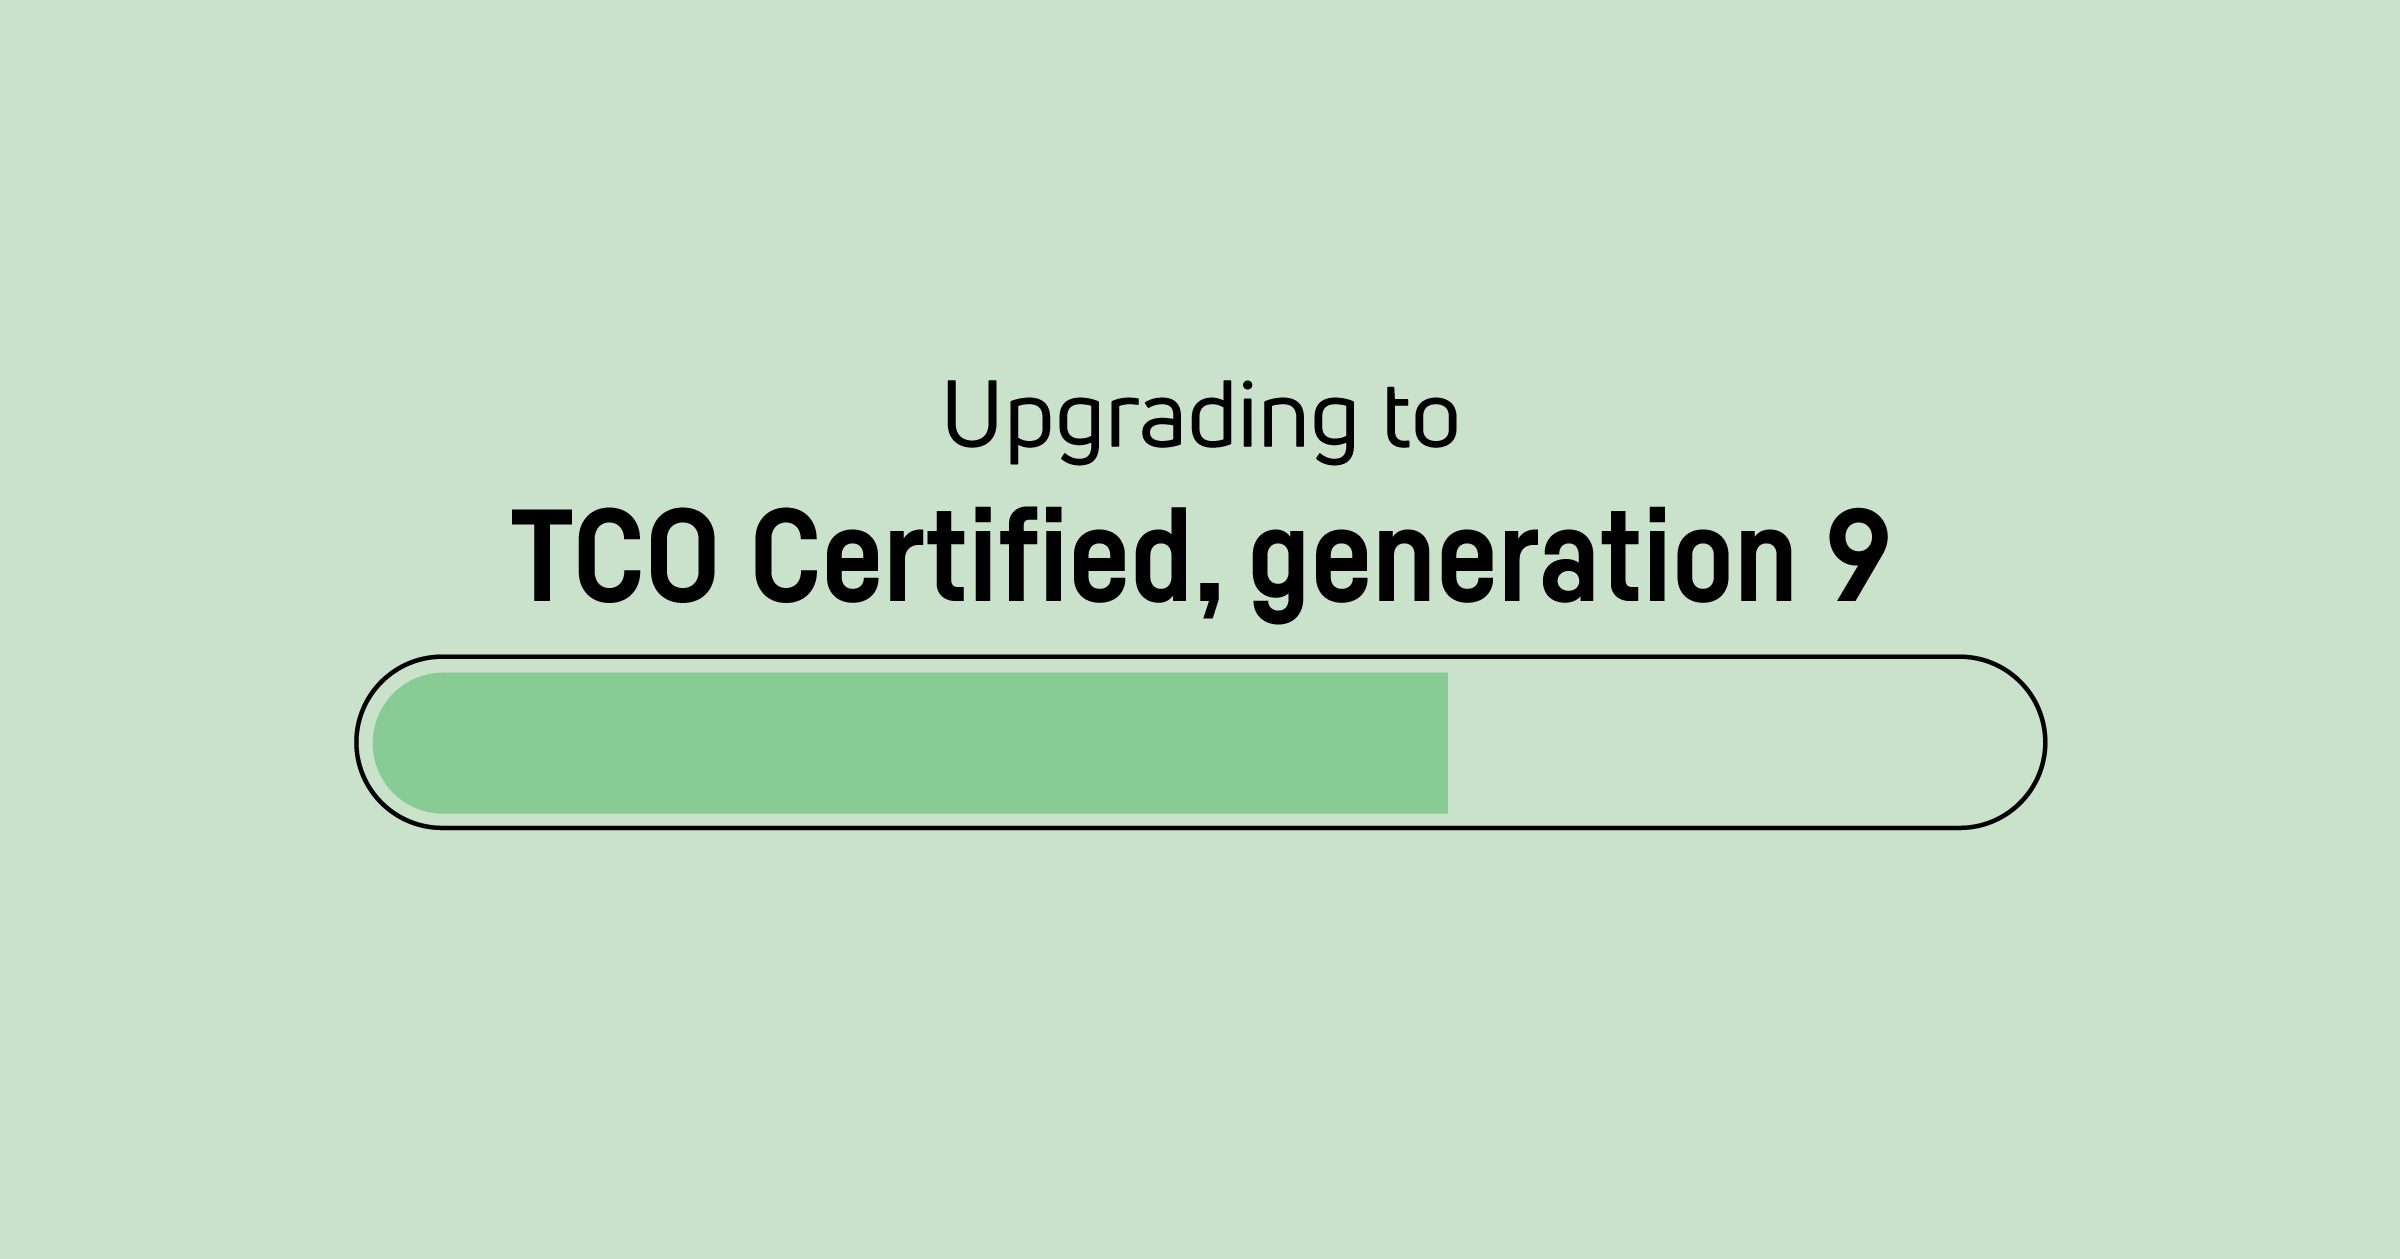 是时候升级了TCO Certified,generation 8 证书